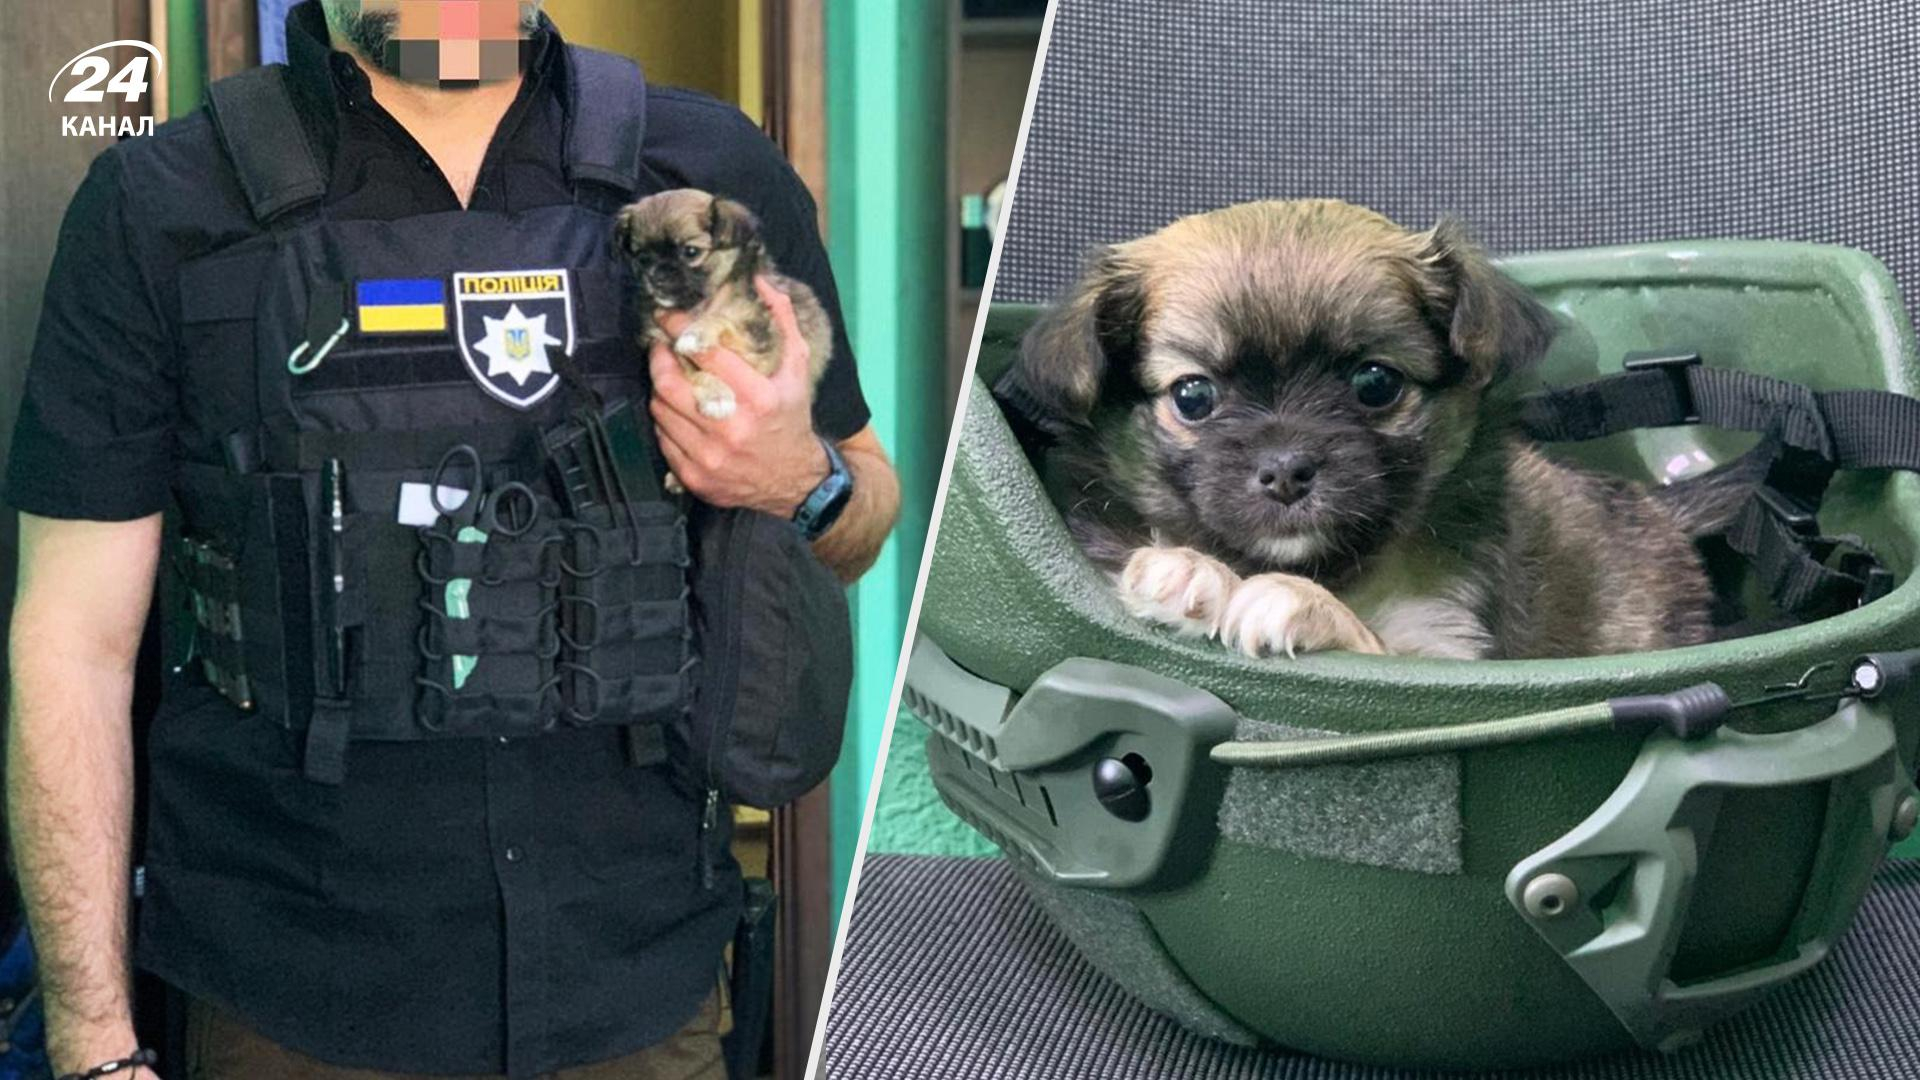 Полицейский спас щенка и назвал его Азов: трогательная история